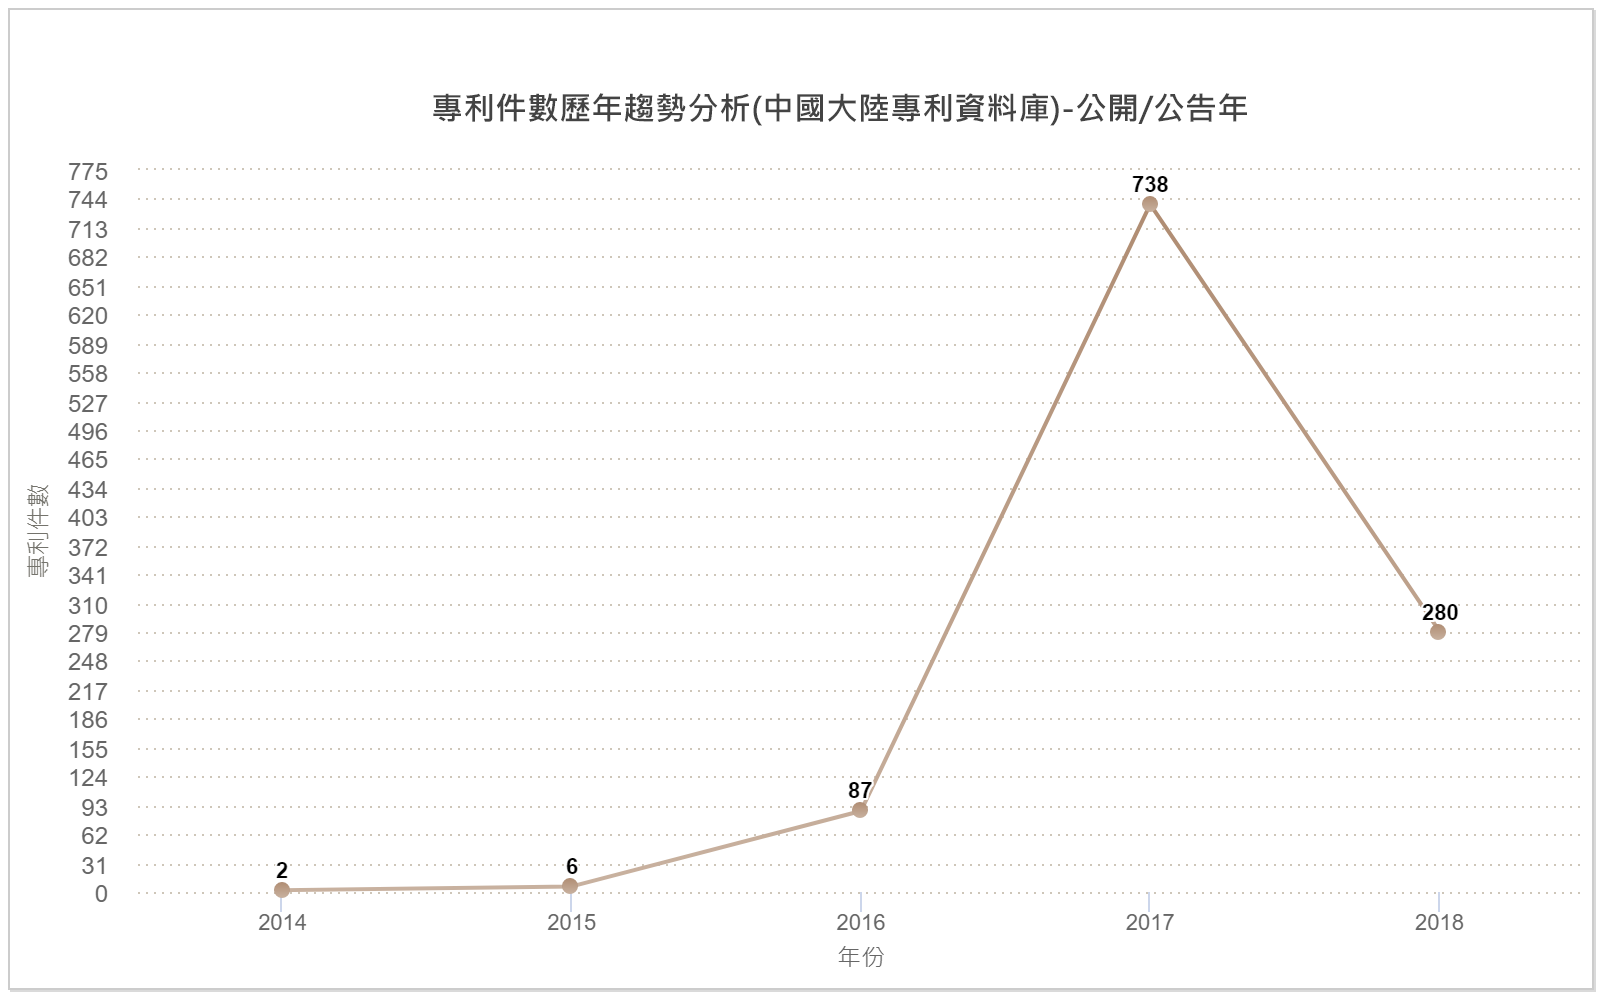 專利件數歷年趨勢分析圖(中國大陸專利資料庫)-公開/公告年